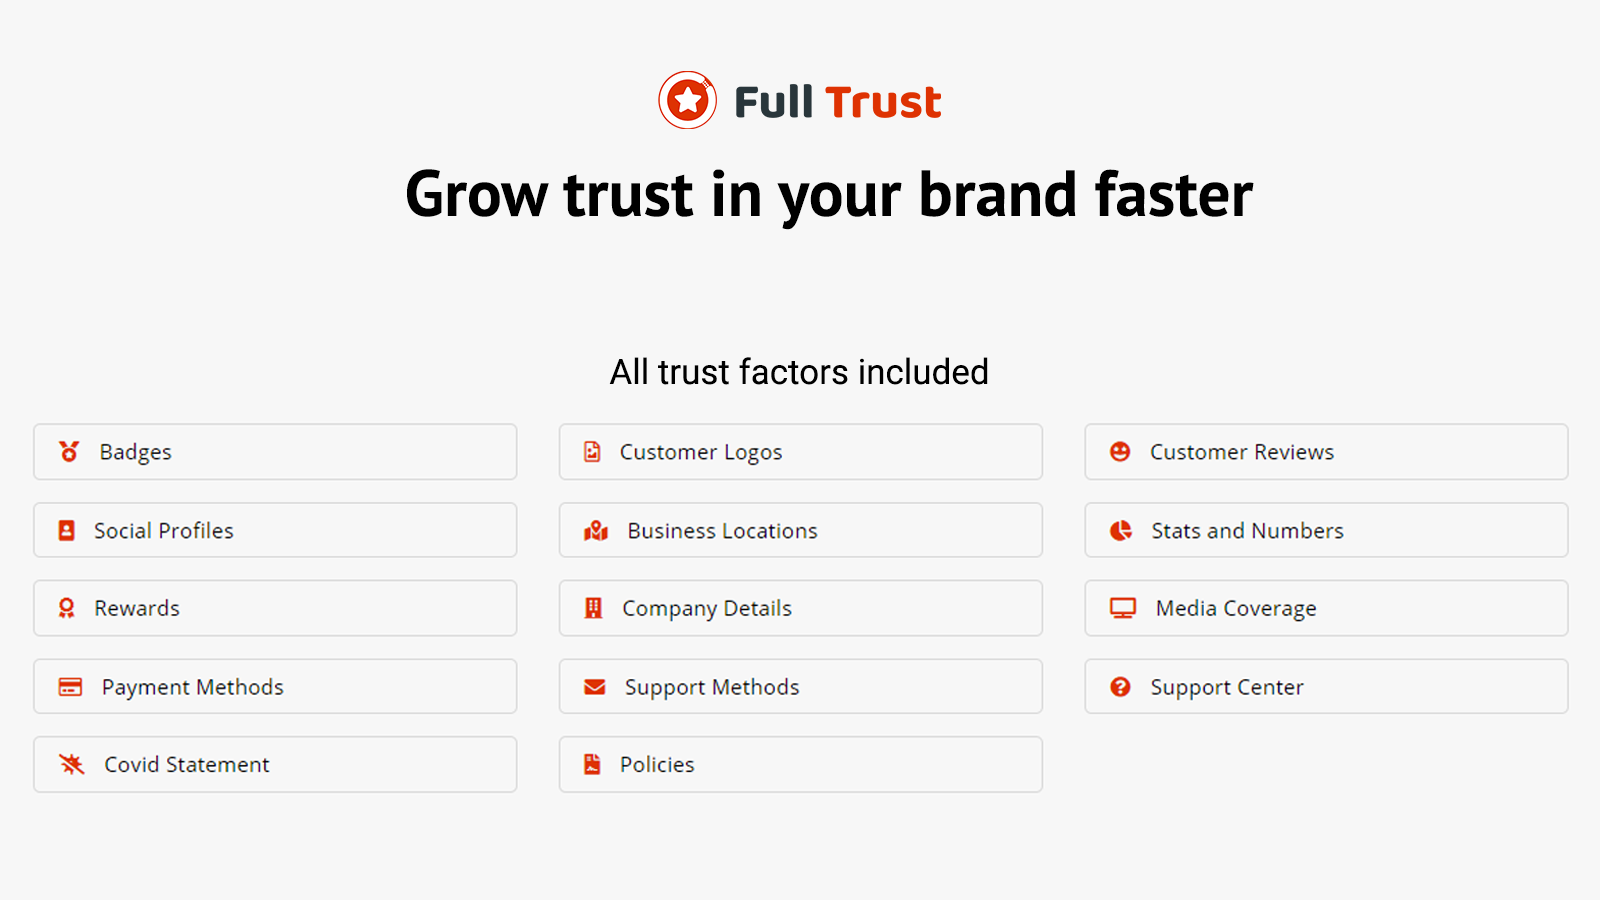 Full Trust - All Trust Factors Included